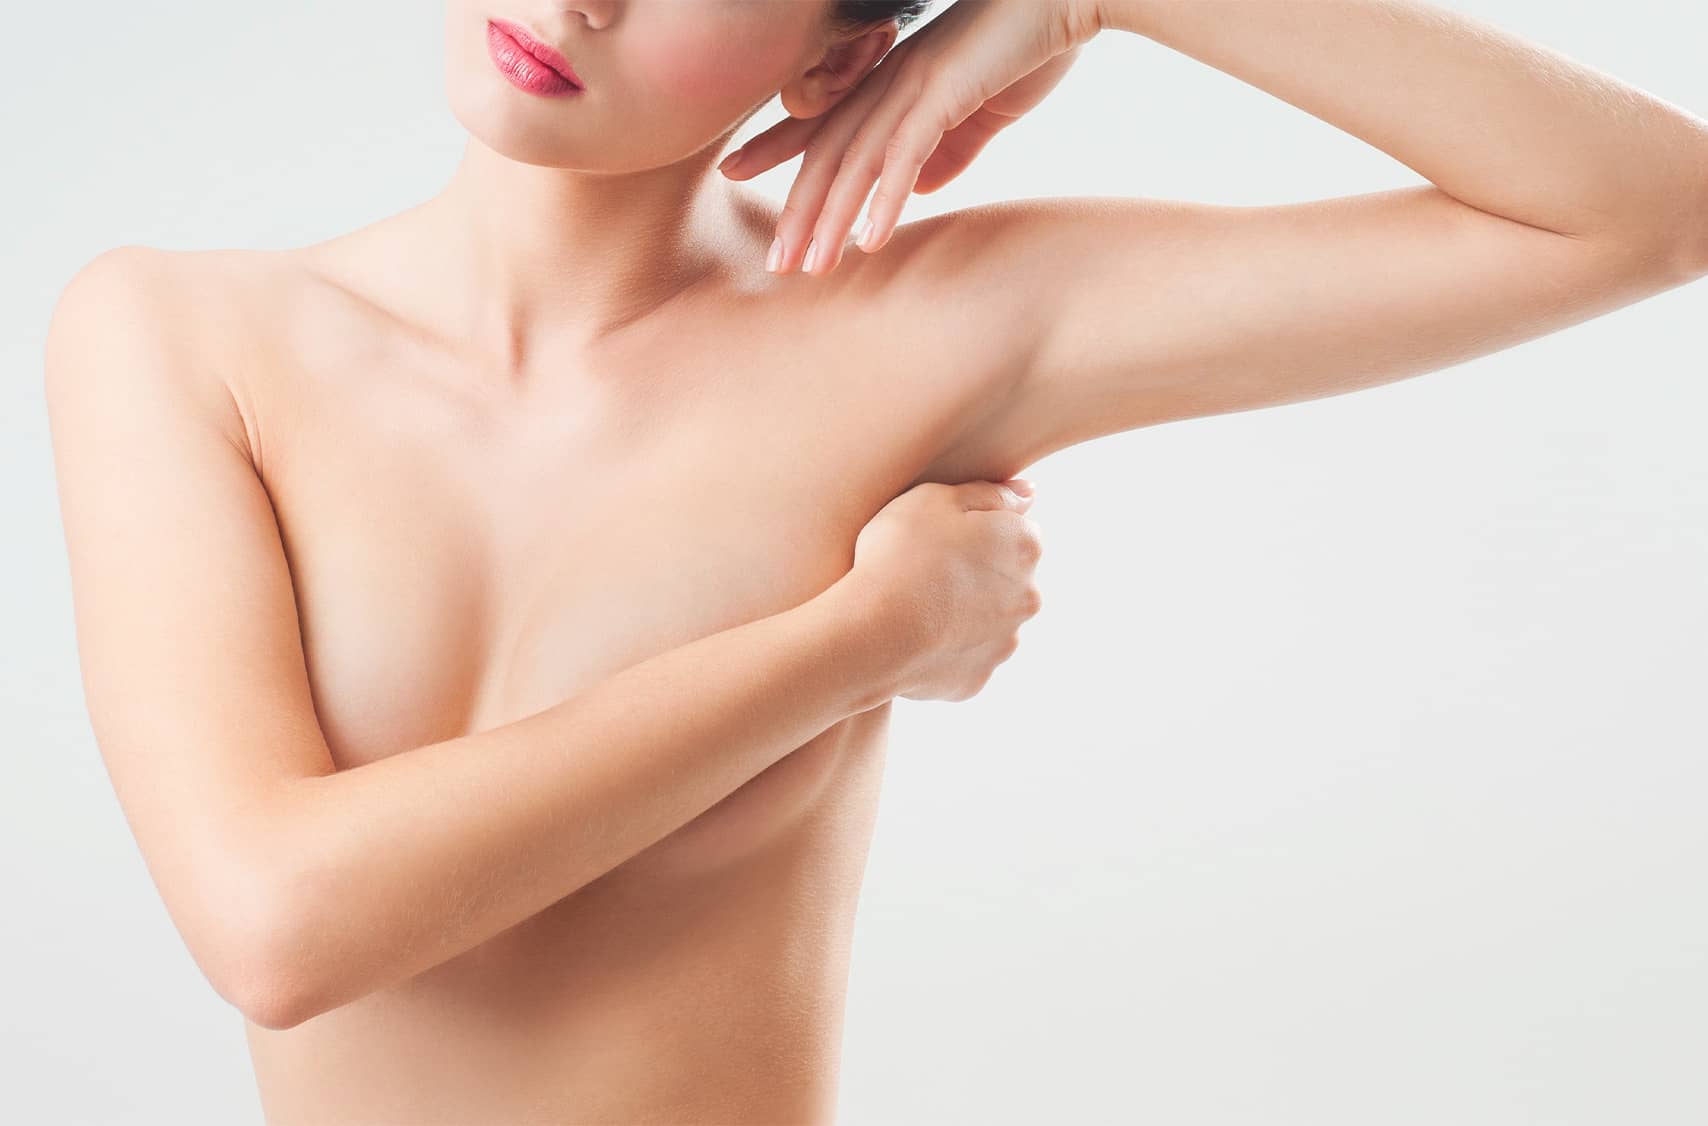 Chirurgie mammaire : tarifs de chirurgie des seins | Paris 16 | Dr Pecorelli